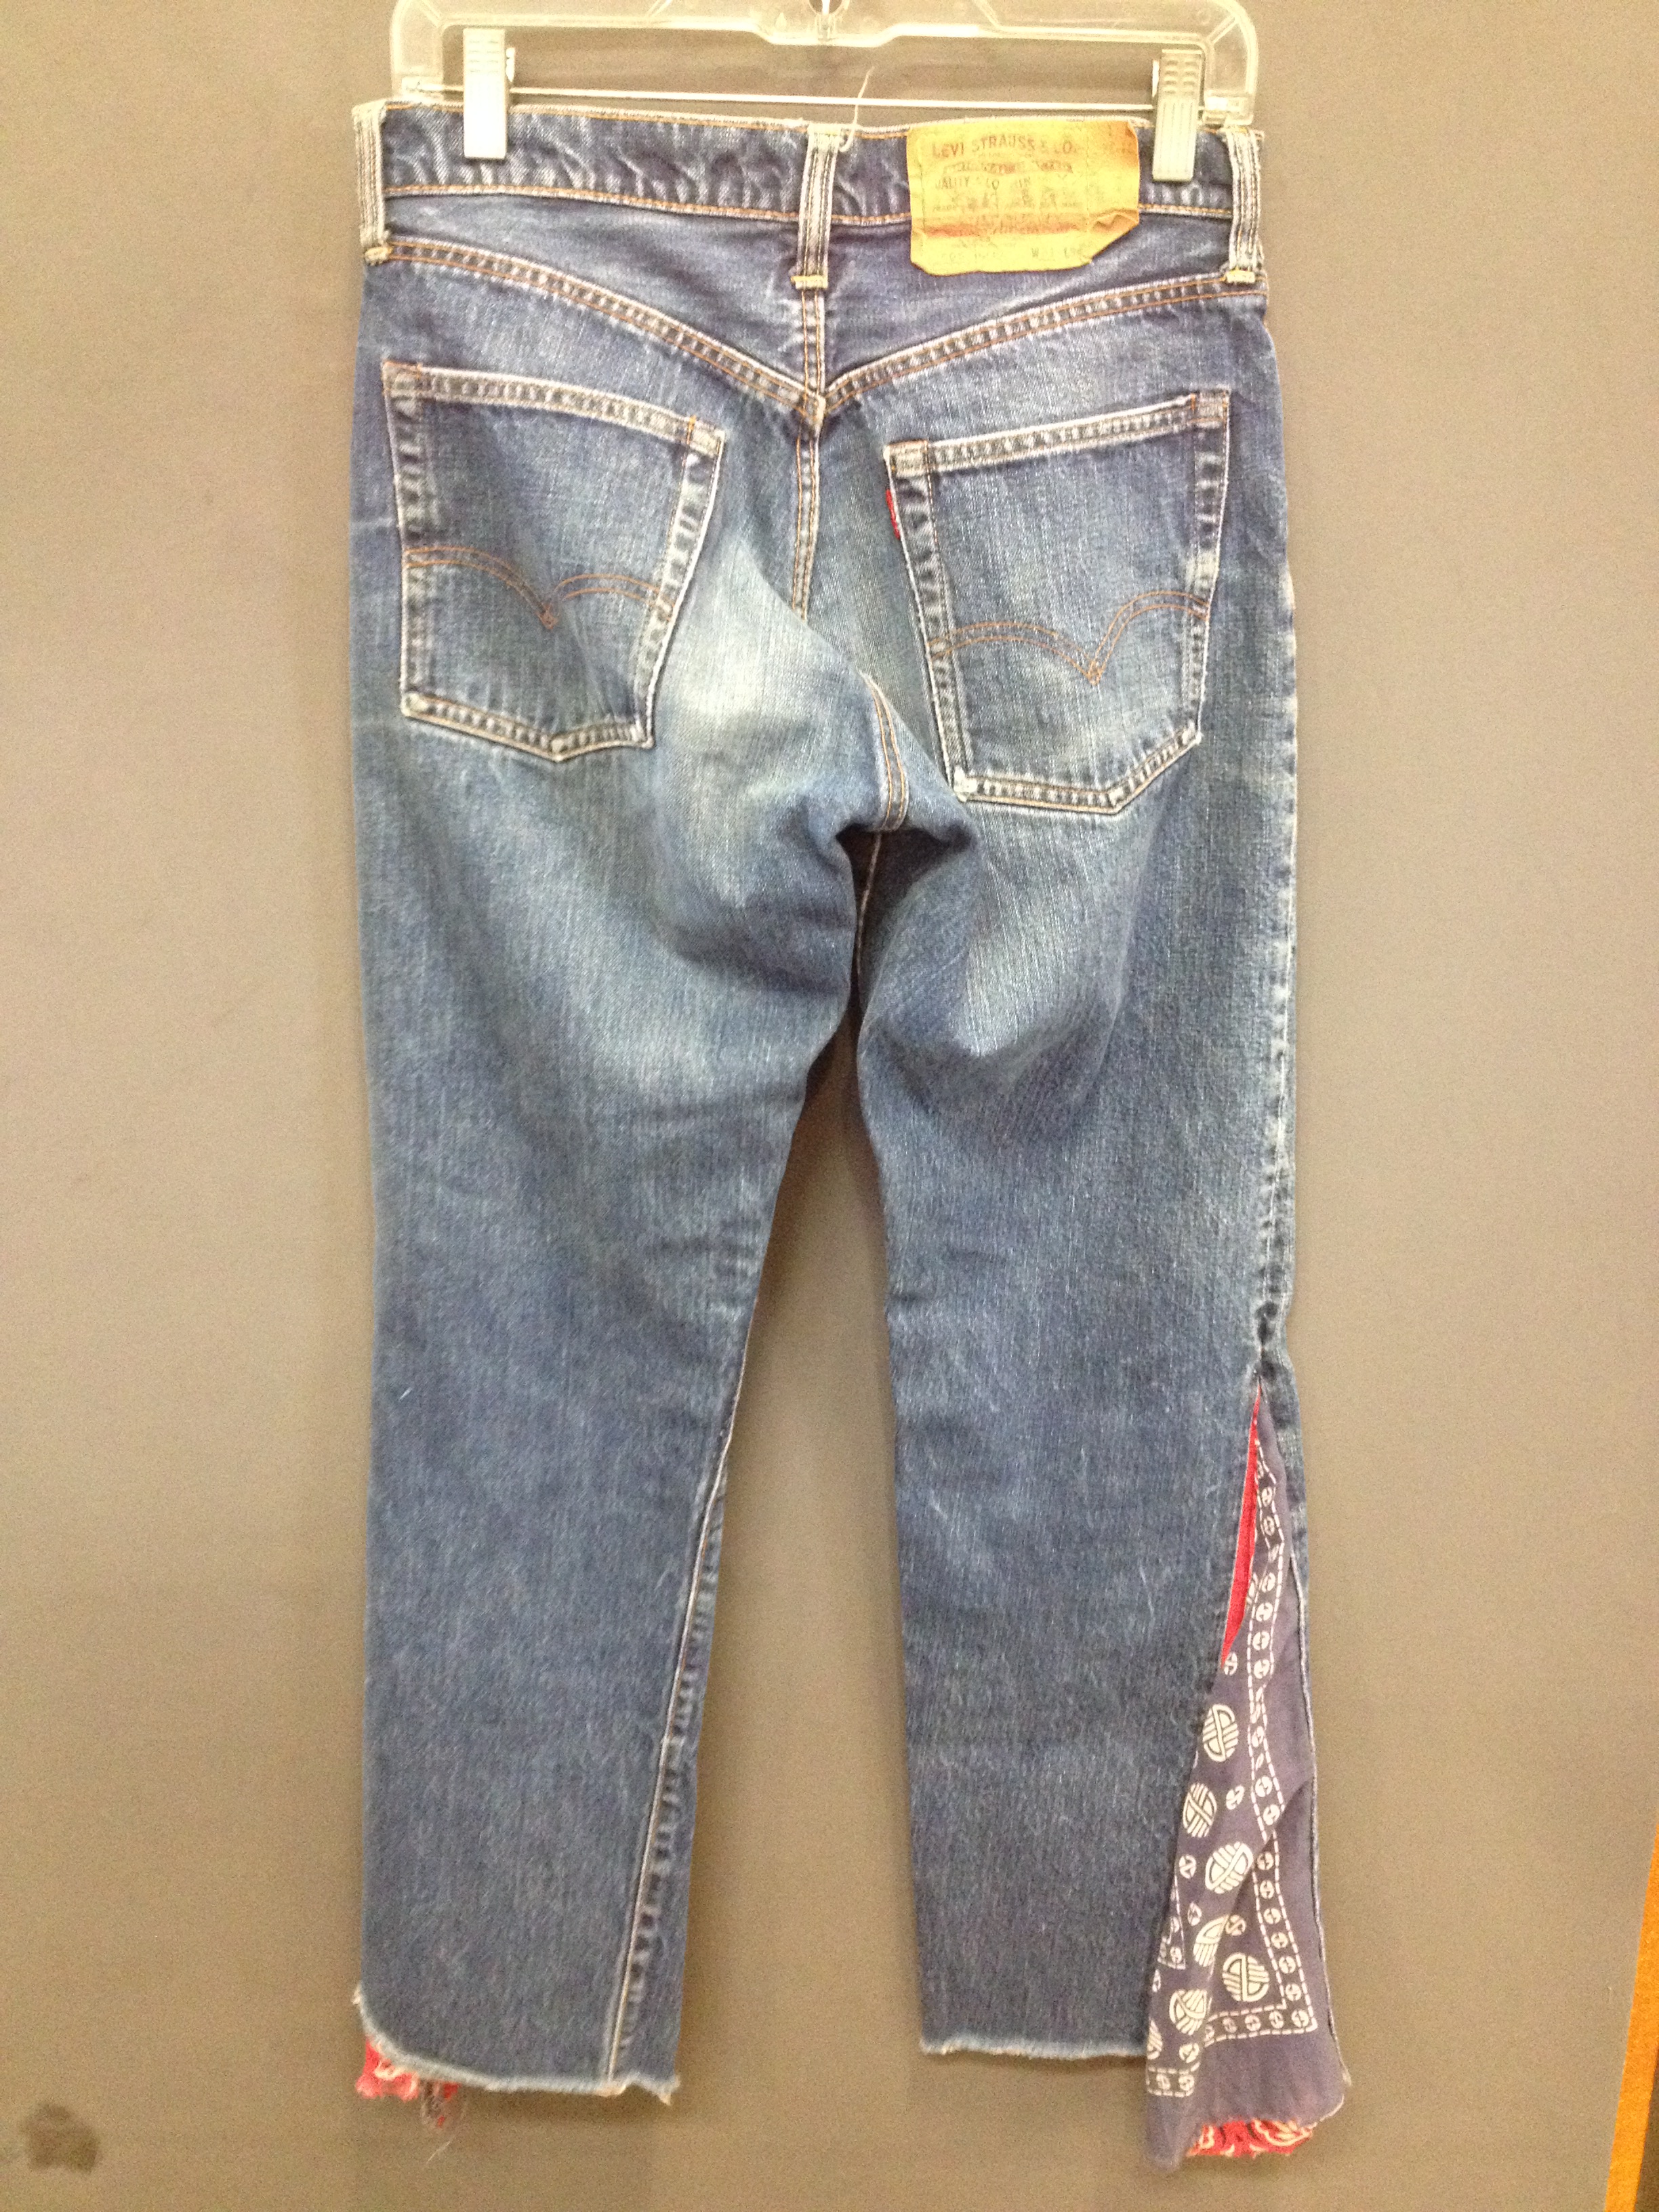 levis jeans zipper back